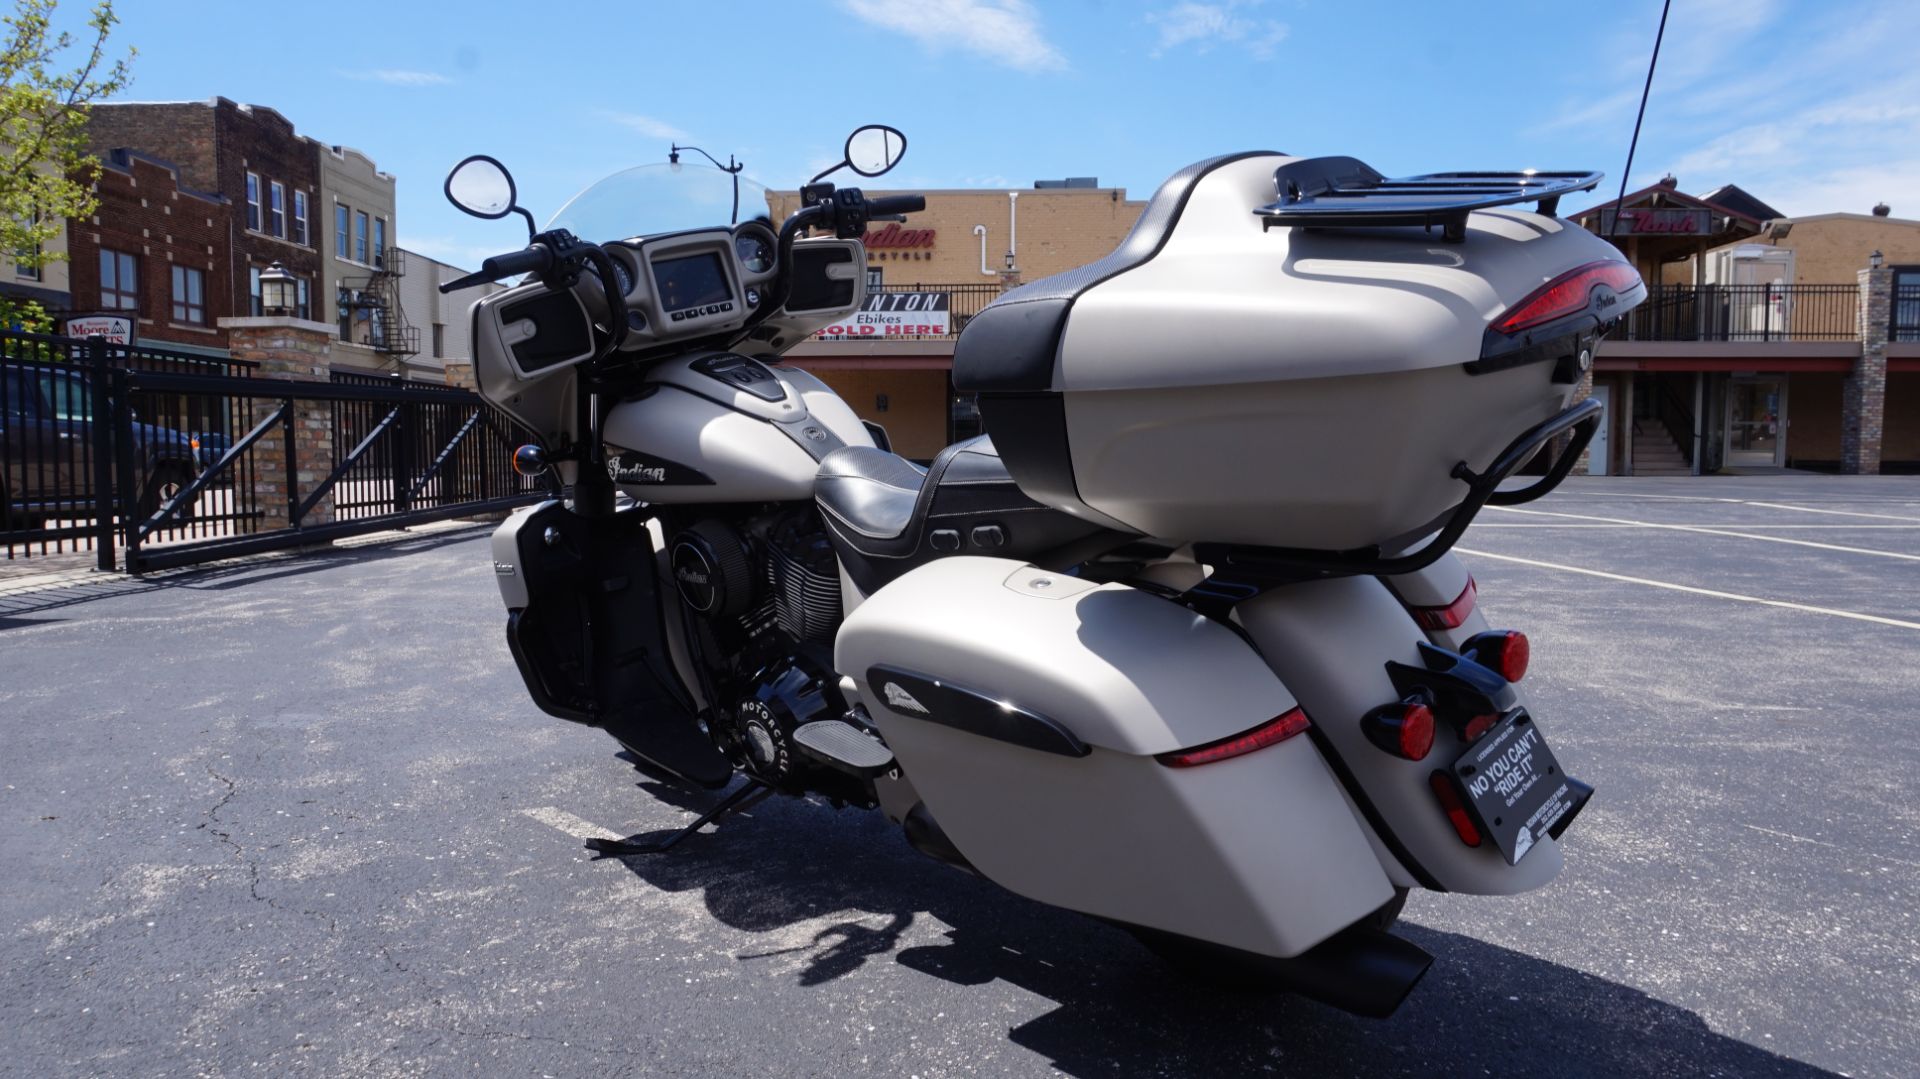 2023 Indian Motorcycle Roadmaster® Dark Horse® in Racine, Wisconsin - Photo 10